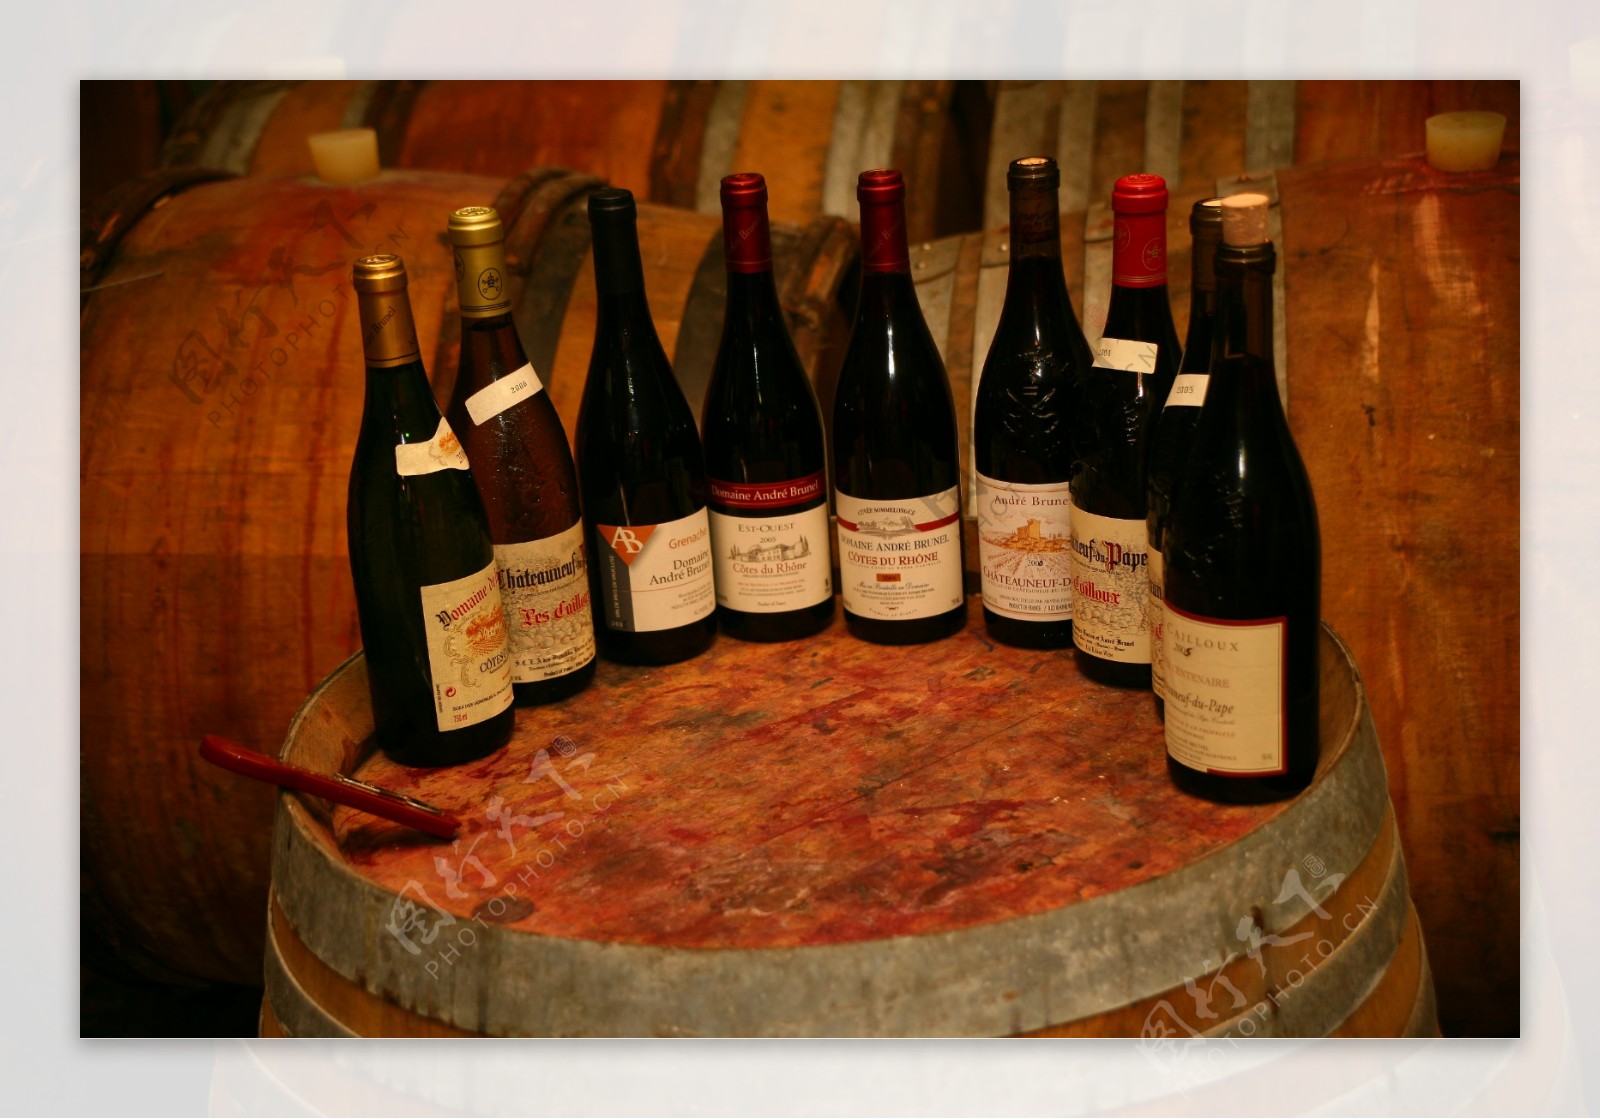 法国波尔多葡萄酒图片